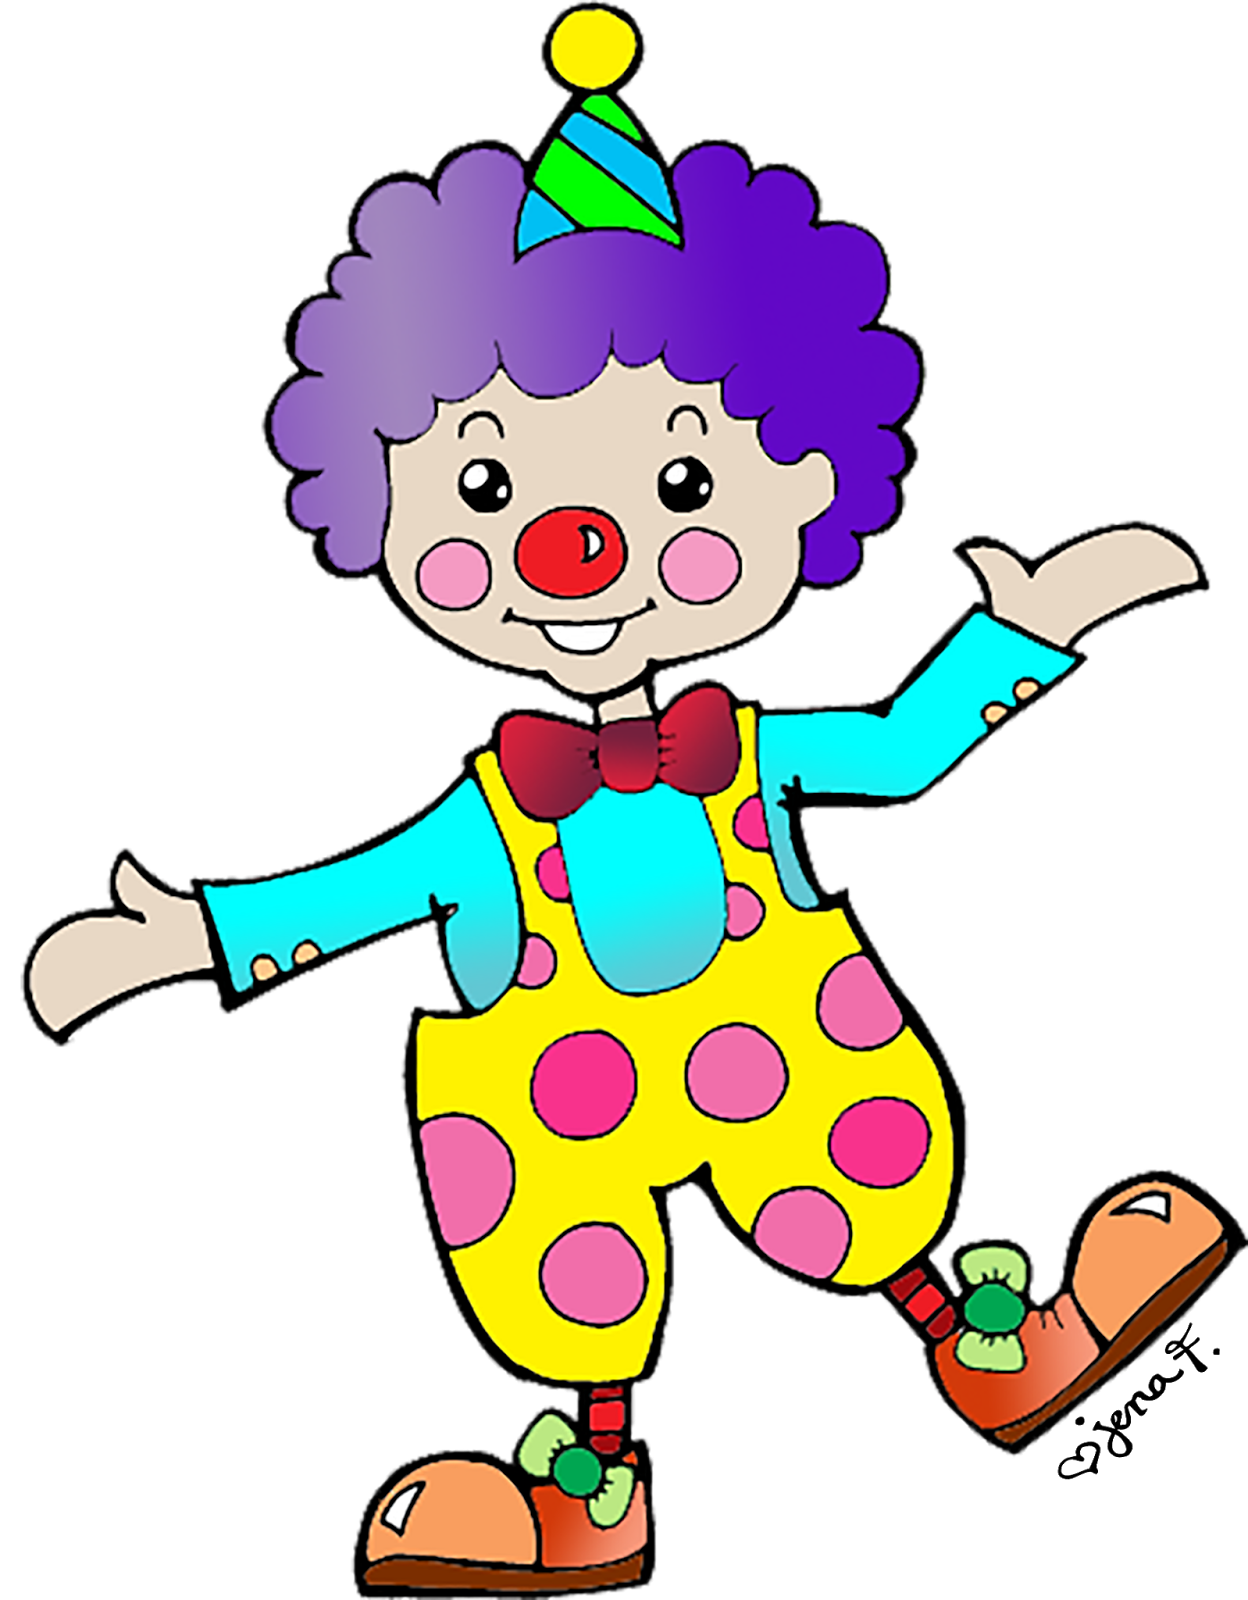 friendly clipart clown